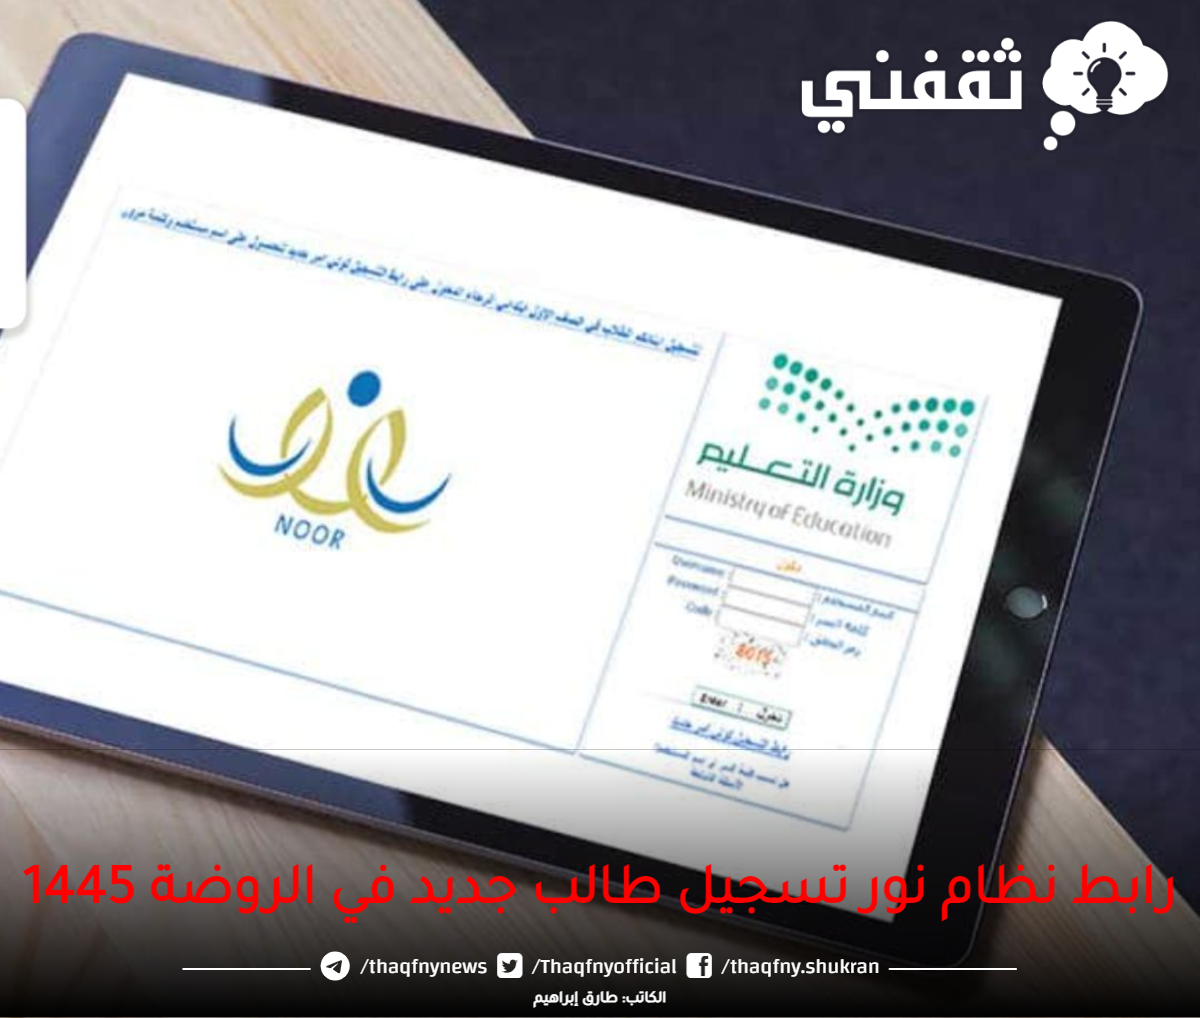 رابط نظام نور تسجيل طالب جديد في الروضة 1445 - مدونة التقنية العربية